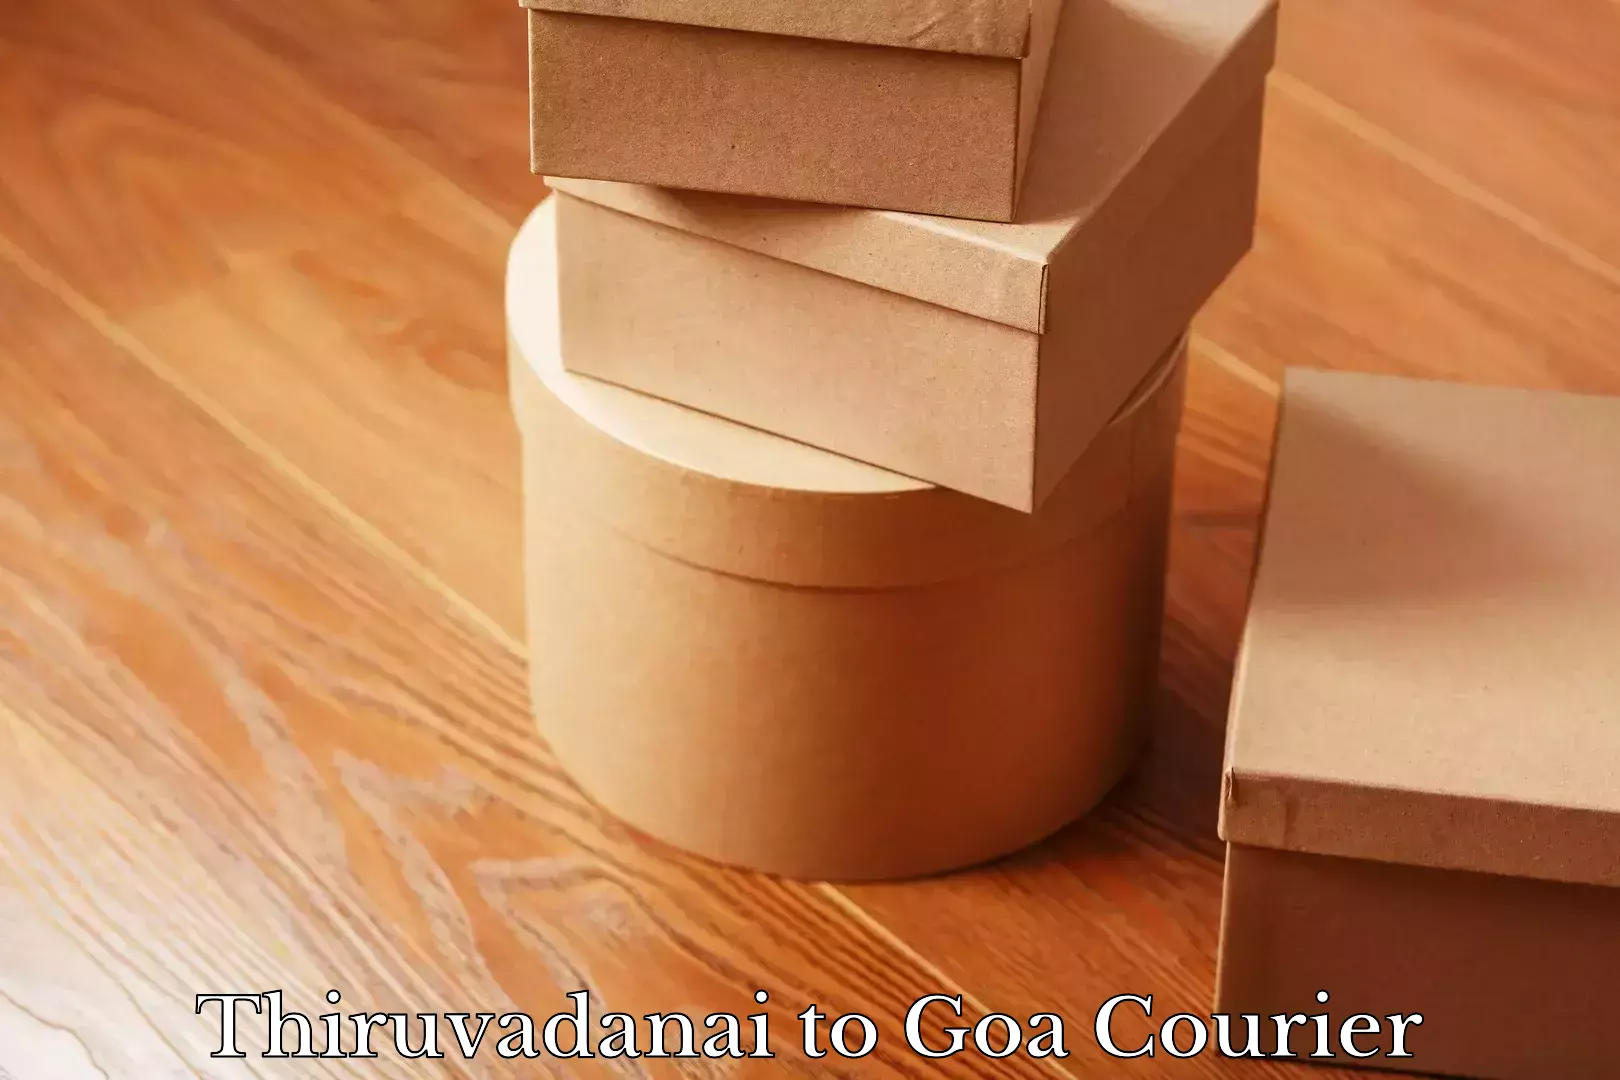 Full-service courier options Thiruvadanai to Goa